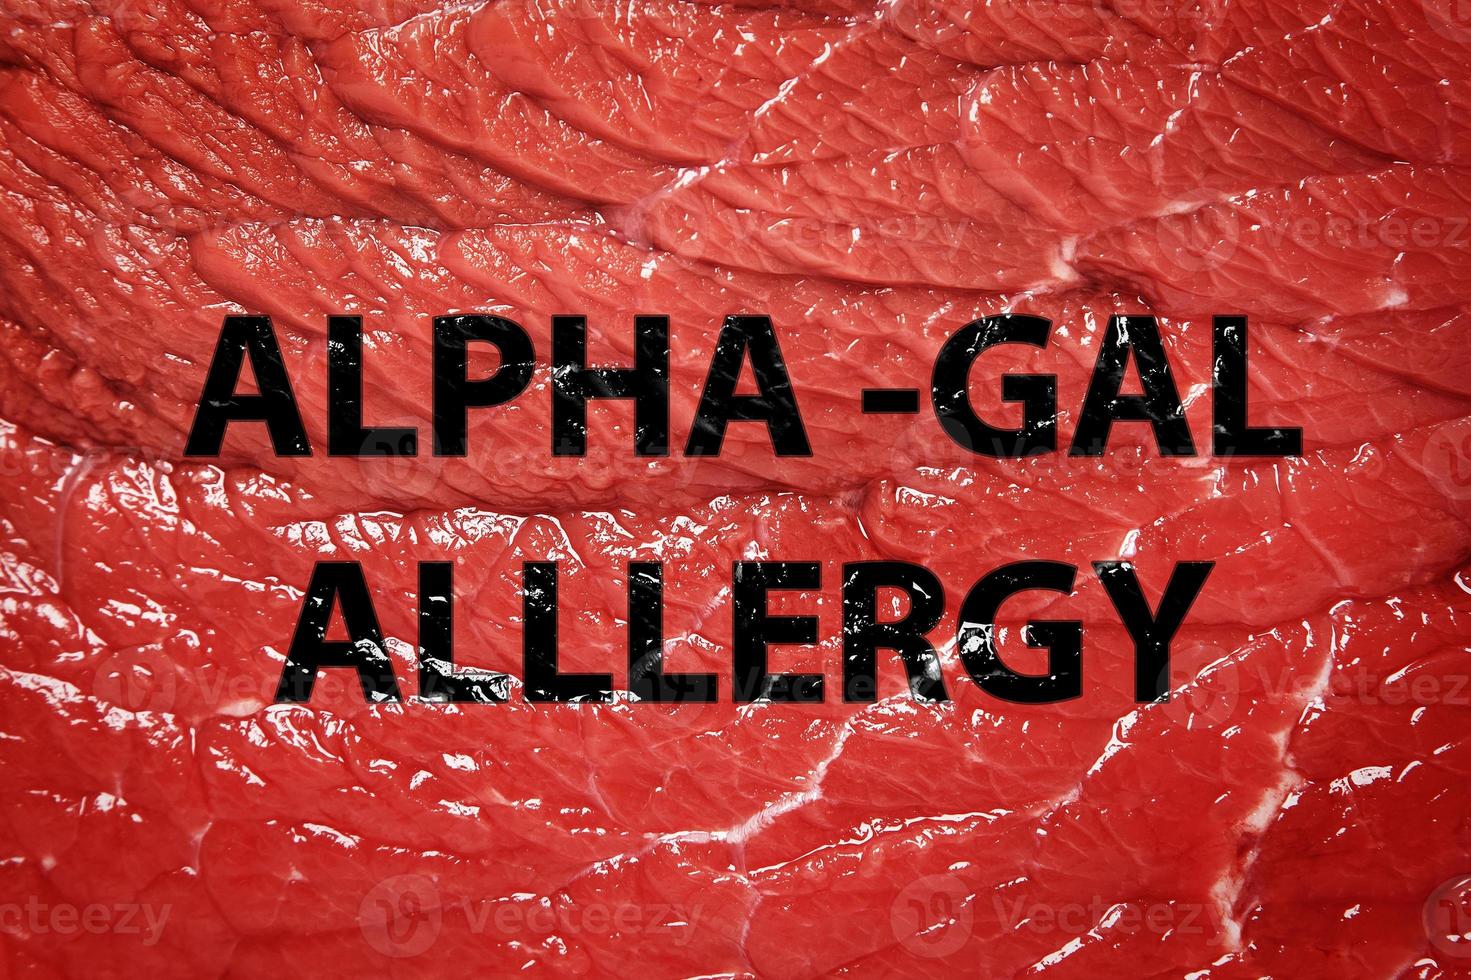 trozo de carne roja y letras de alergia alfa-gal foto